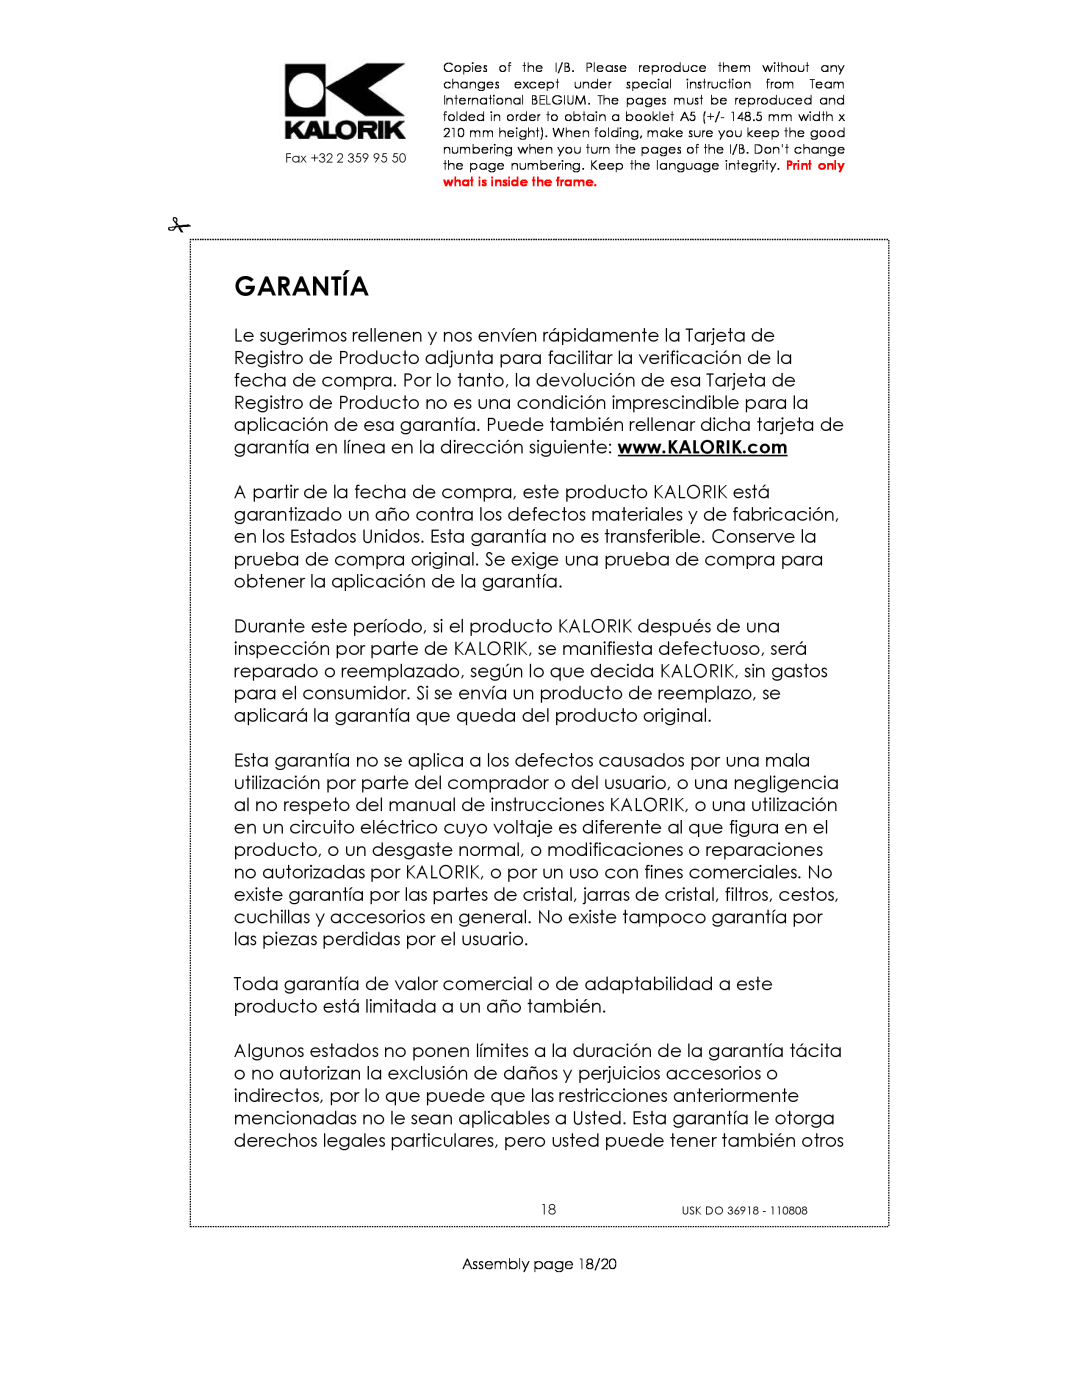 Kalorik USK DO 36918 manual Garantía, Assembly page 18/20 